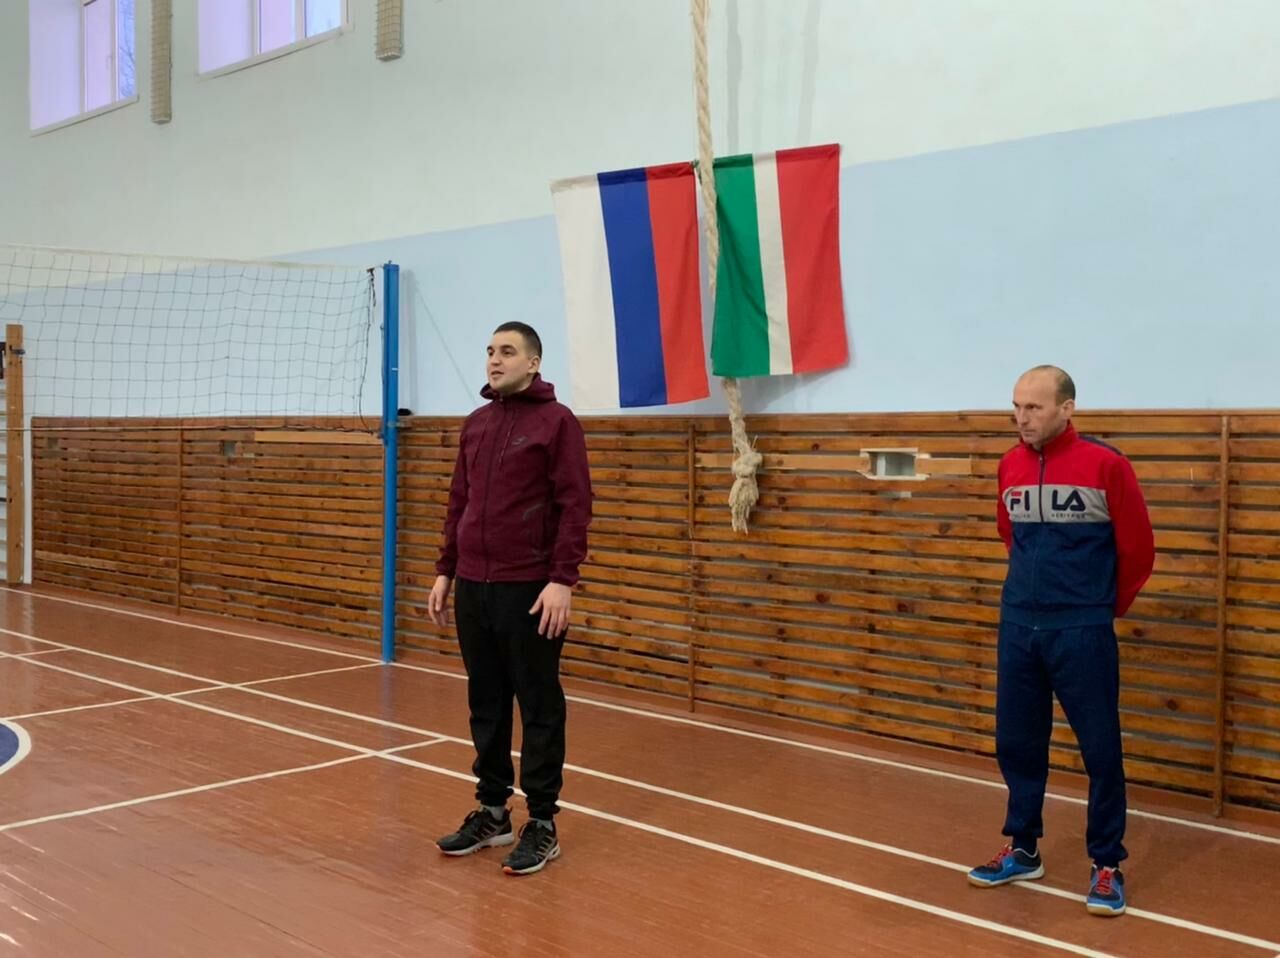 Отцы учащихся Татарской школы состязались в преддверии праздника